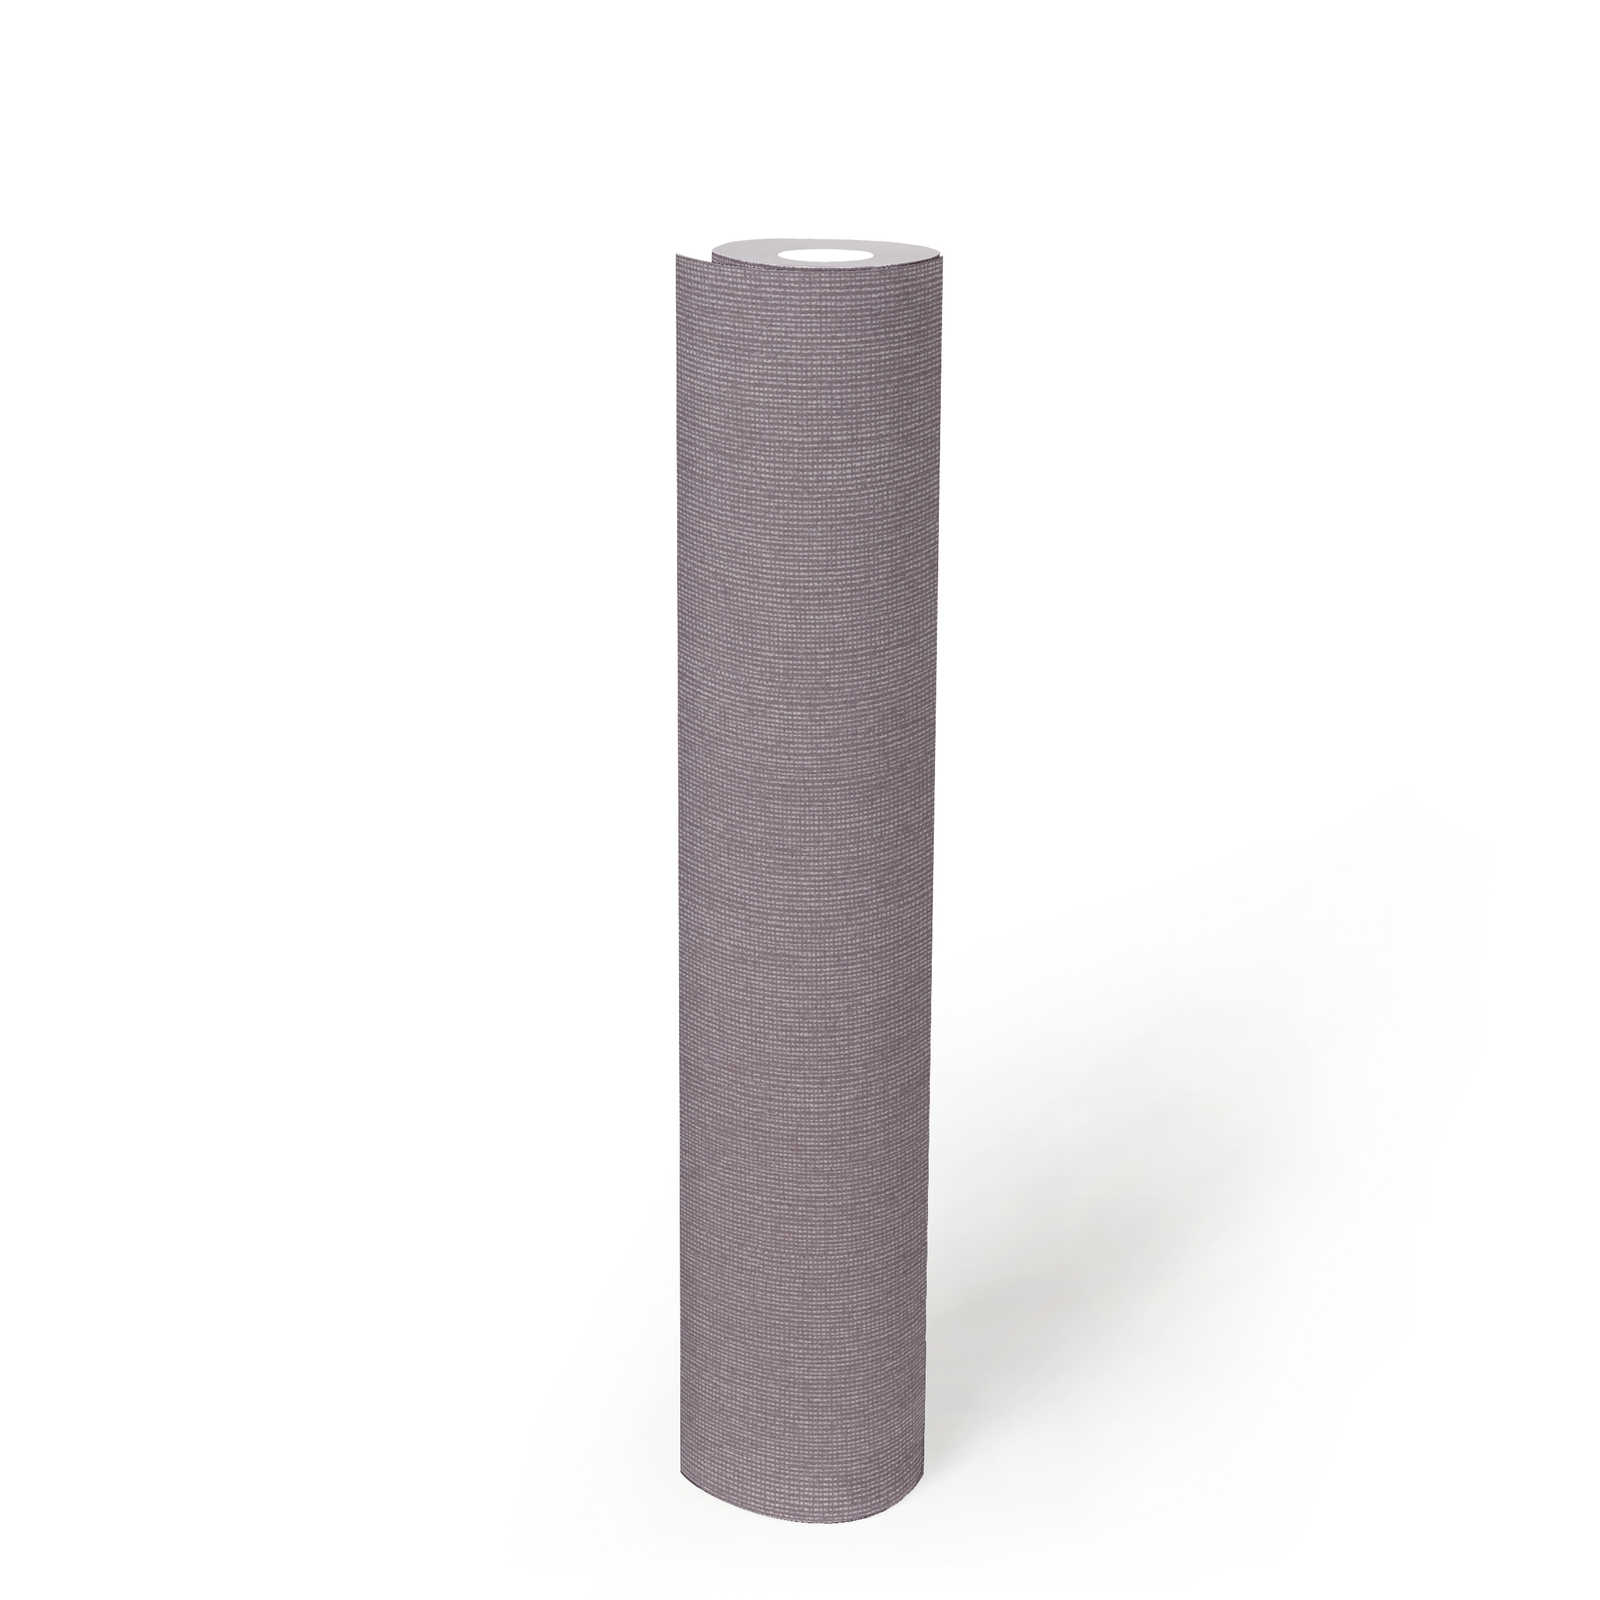             Papier peint brillant avec structure textile & effet chatoyant - violet, gris
        